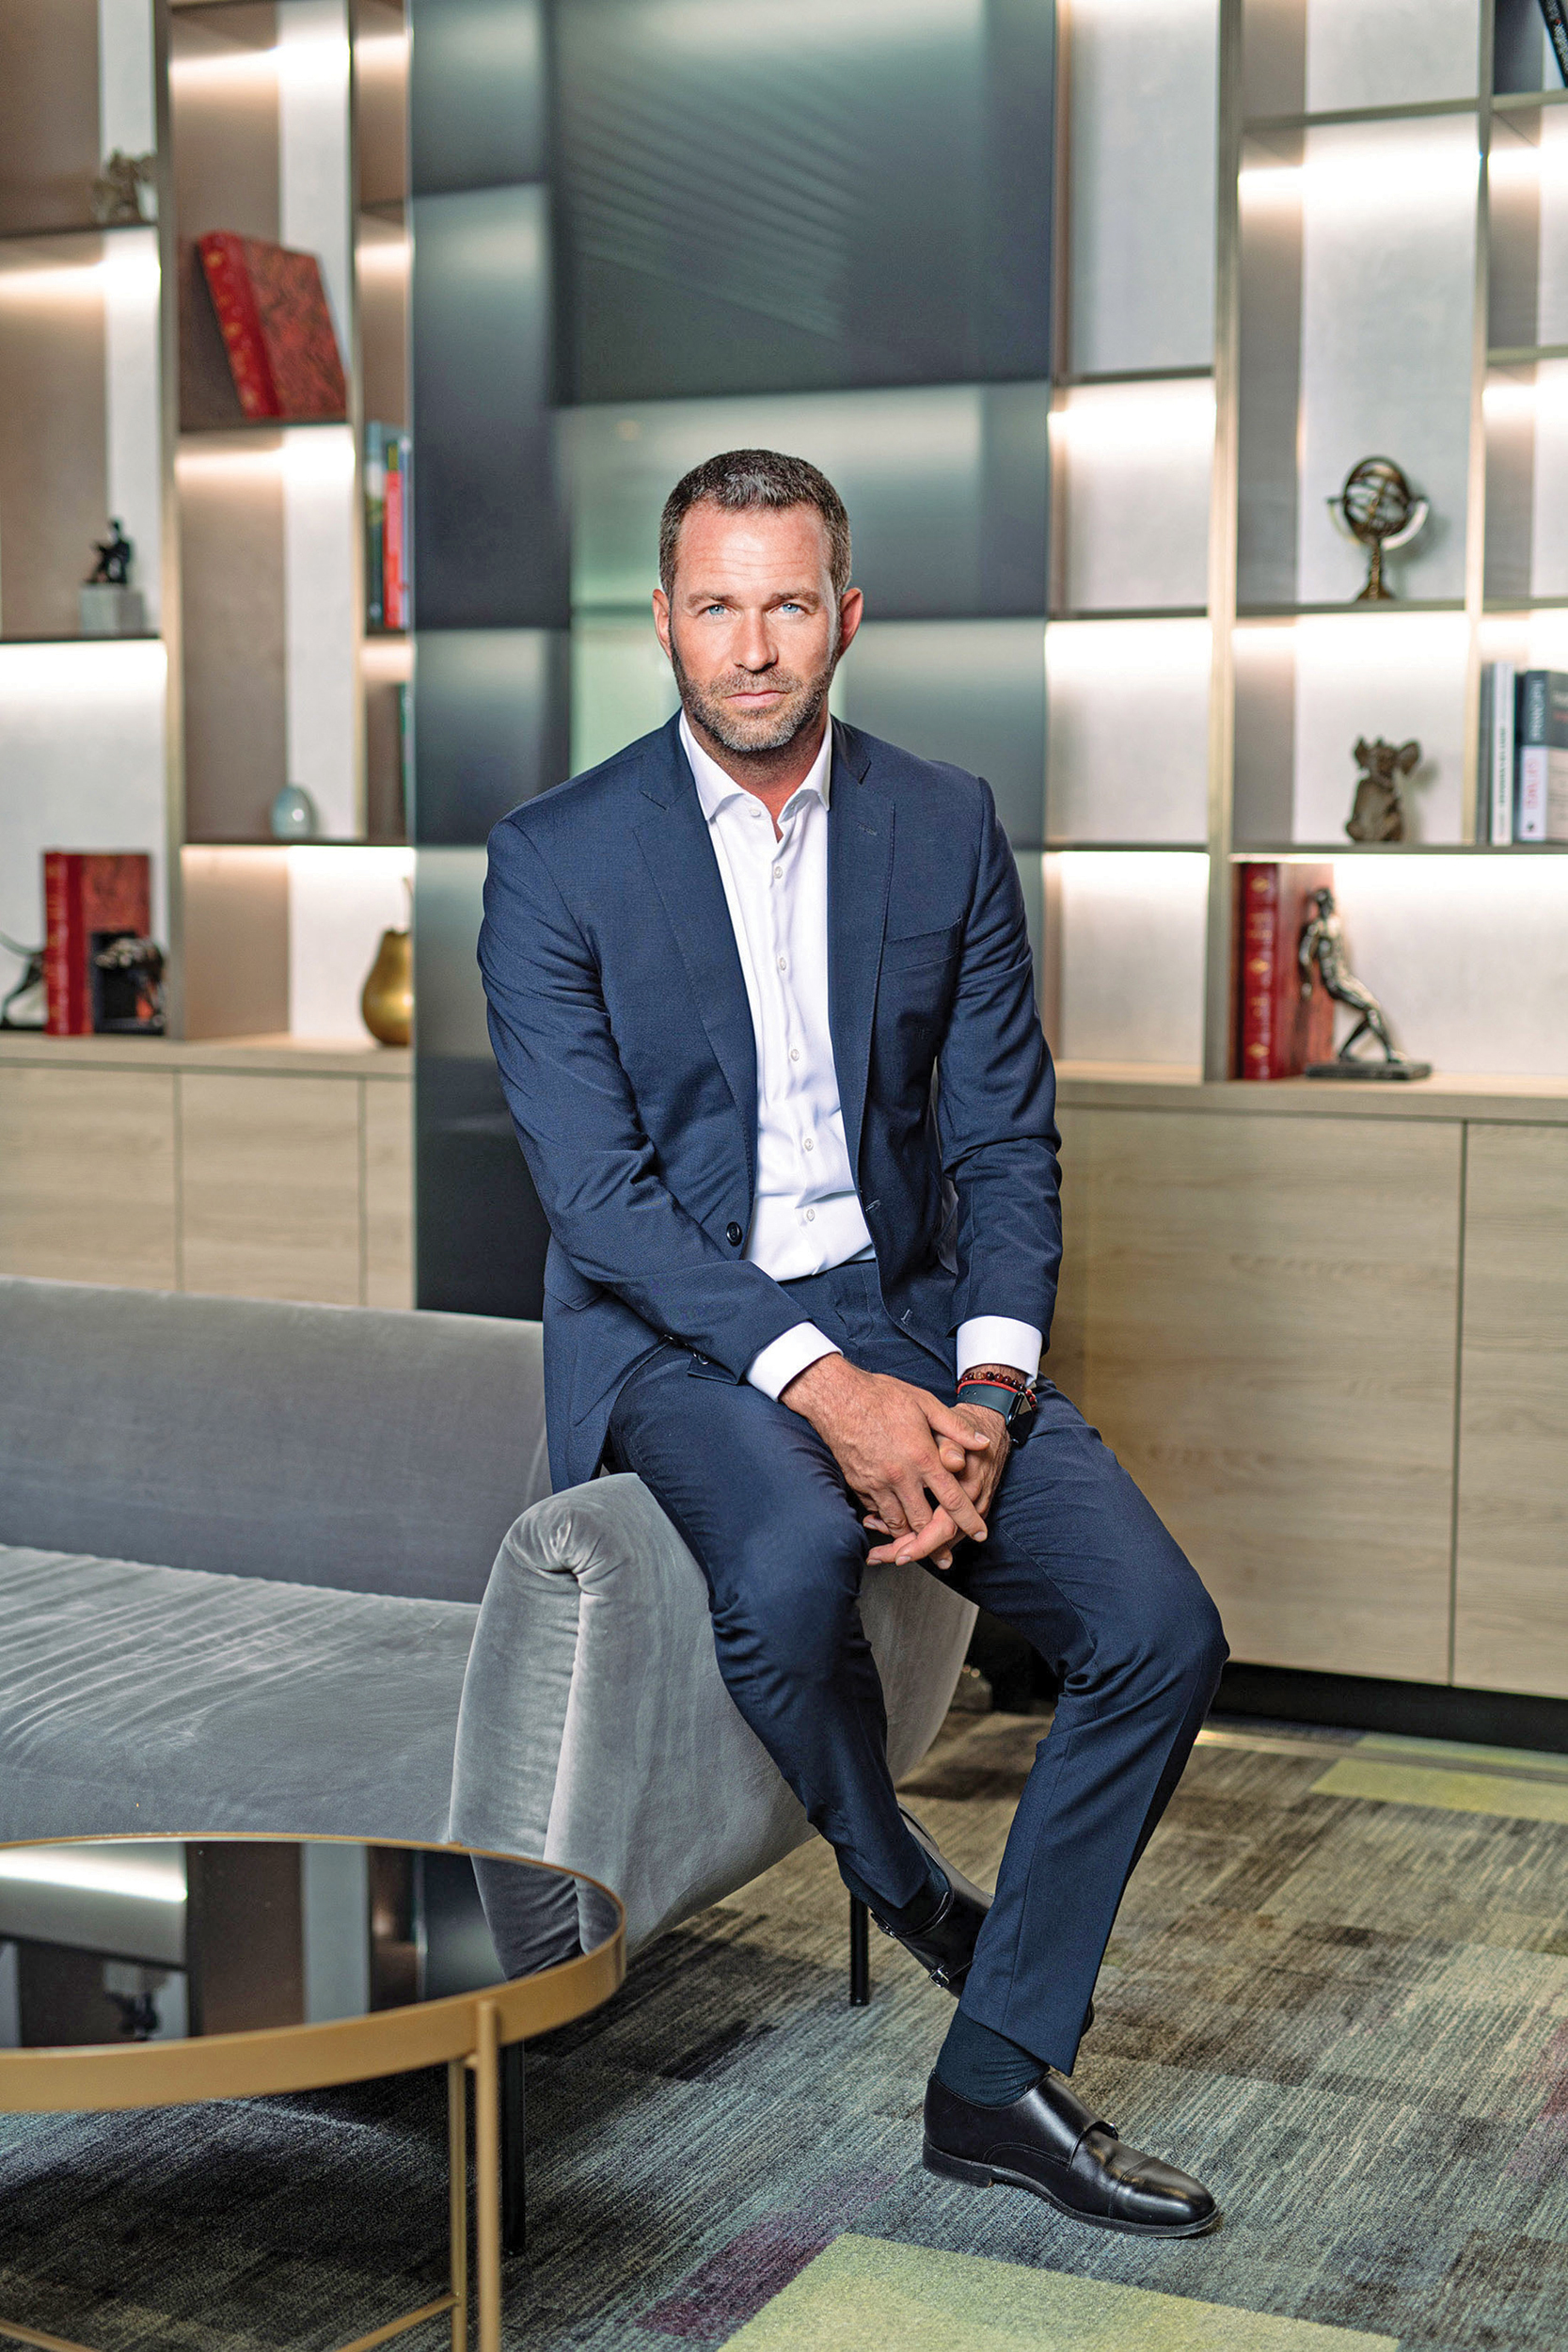 Business Magazin. Nicolae Kovacs, 40 de ani, CEO al Agista: Am jucat hochei de performanţă timp de 10 ani, iar acum joc golf